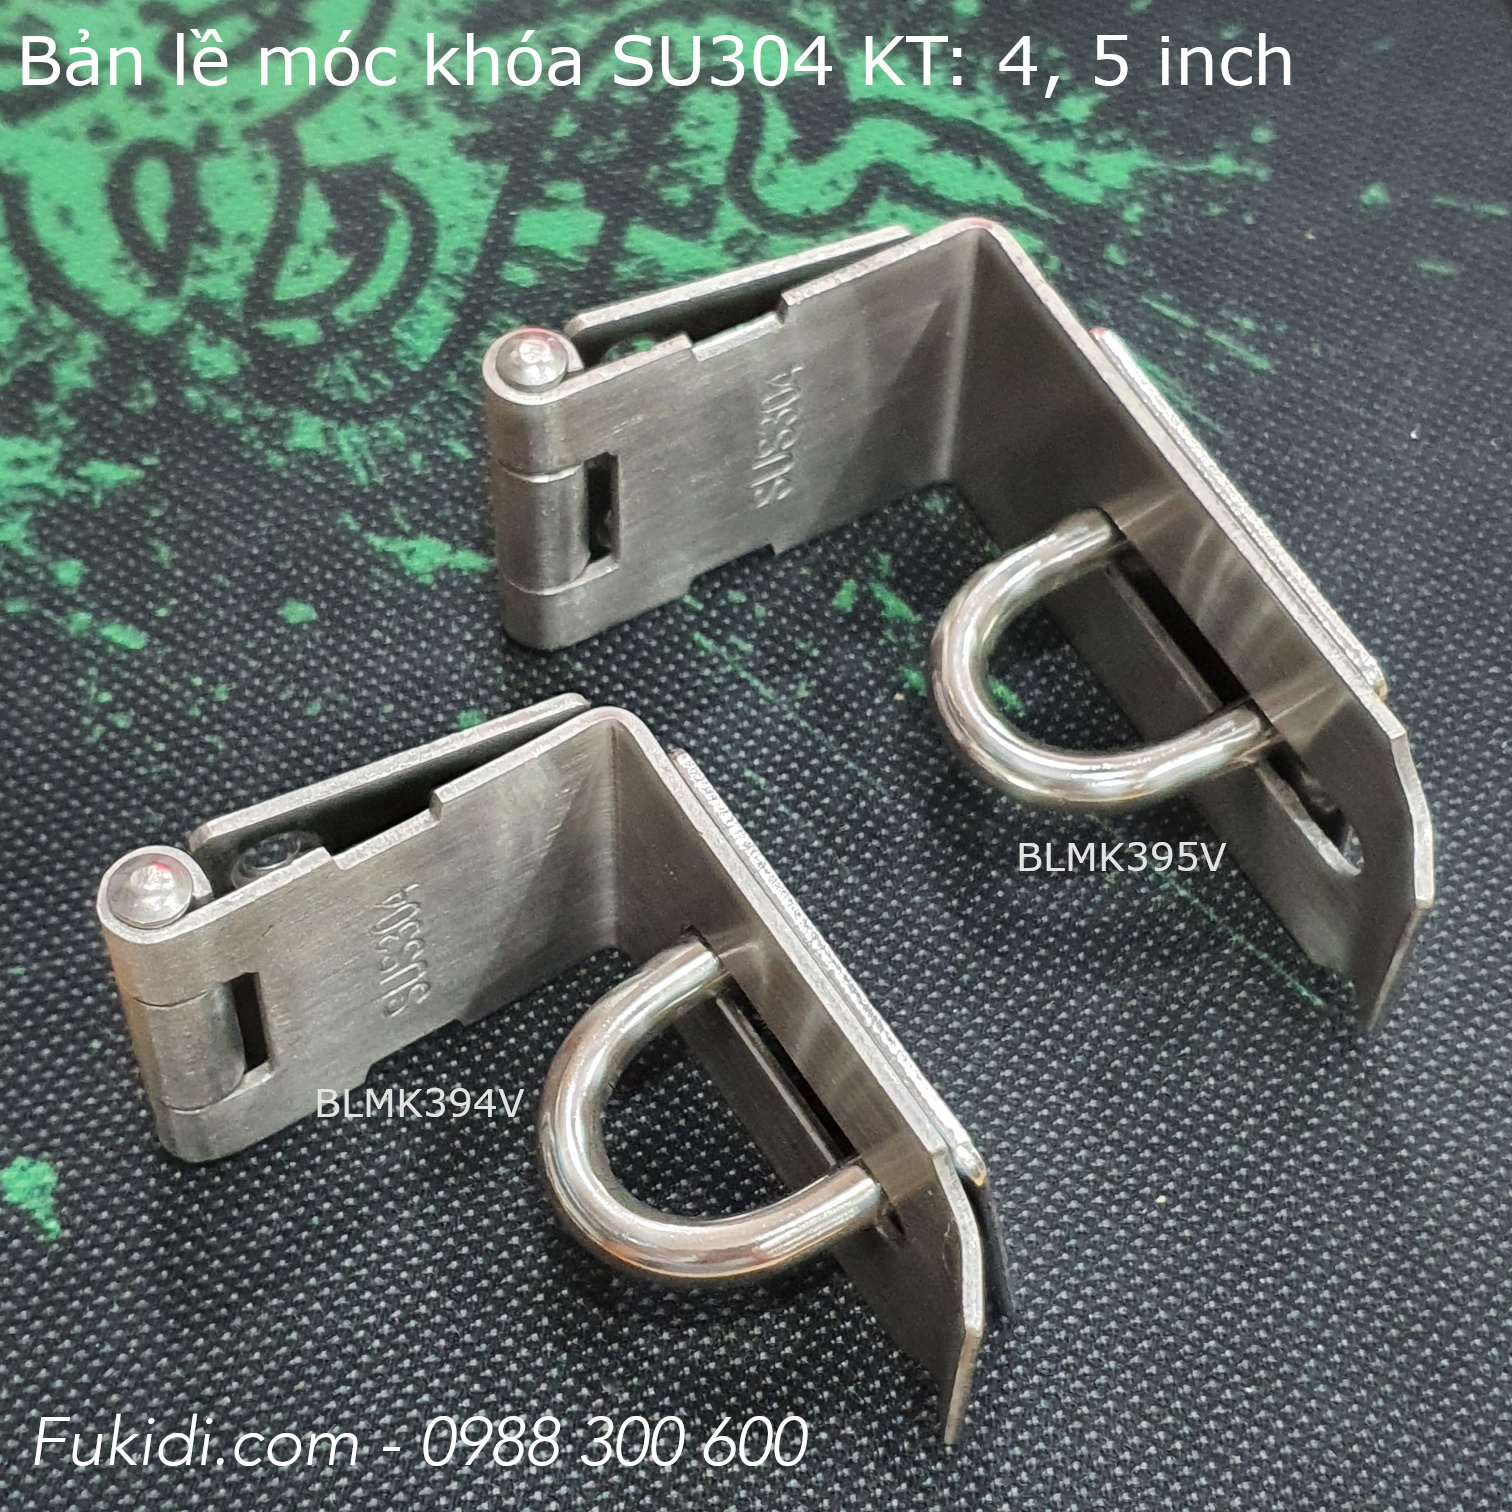 Bản lề móc khóa góc vuông inox 304, 5 inch, dày 2mm - BLMK395V